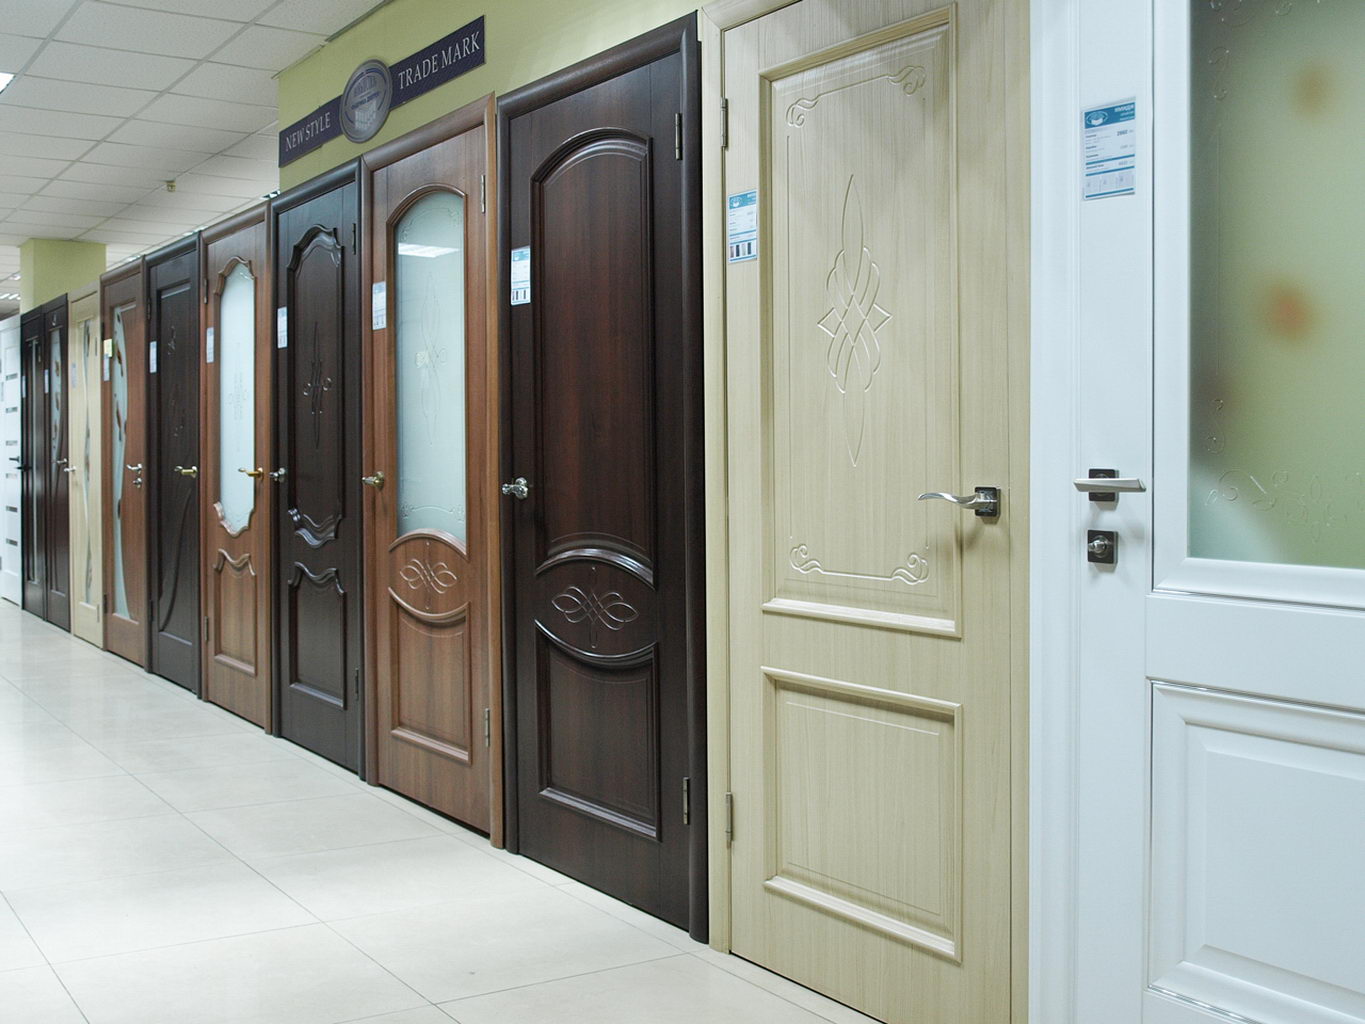 Посмотреть и купить межкомнатные двери Verto в Днепропетровске